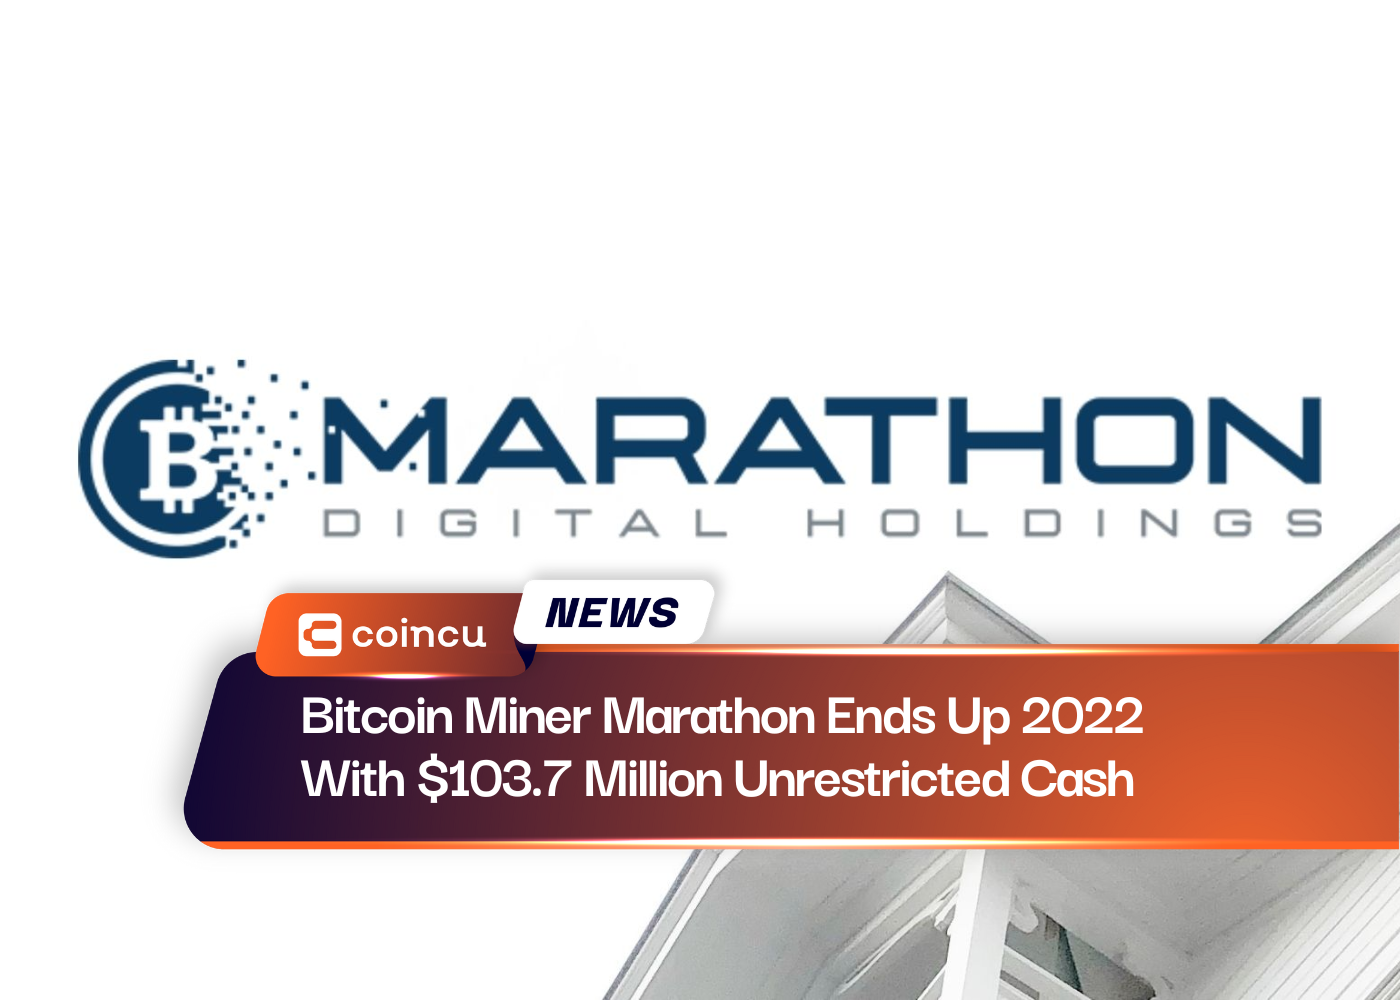 बिटकॉइन माइनर मैराथन 2022 में 103.7 मिलियन डॉलर की अप्रतिबंधित नकदी के साथ समाप्त होगी